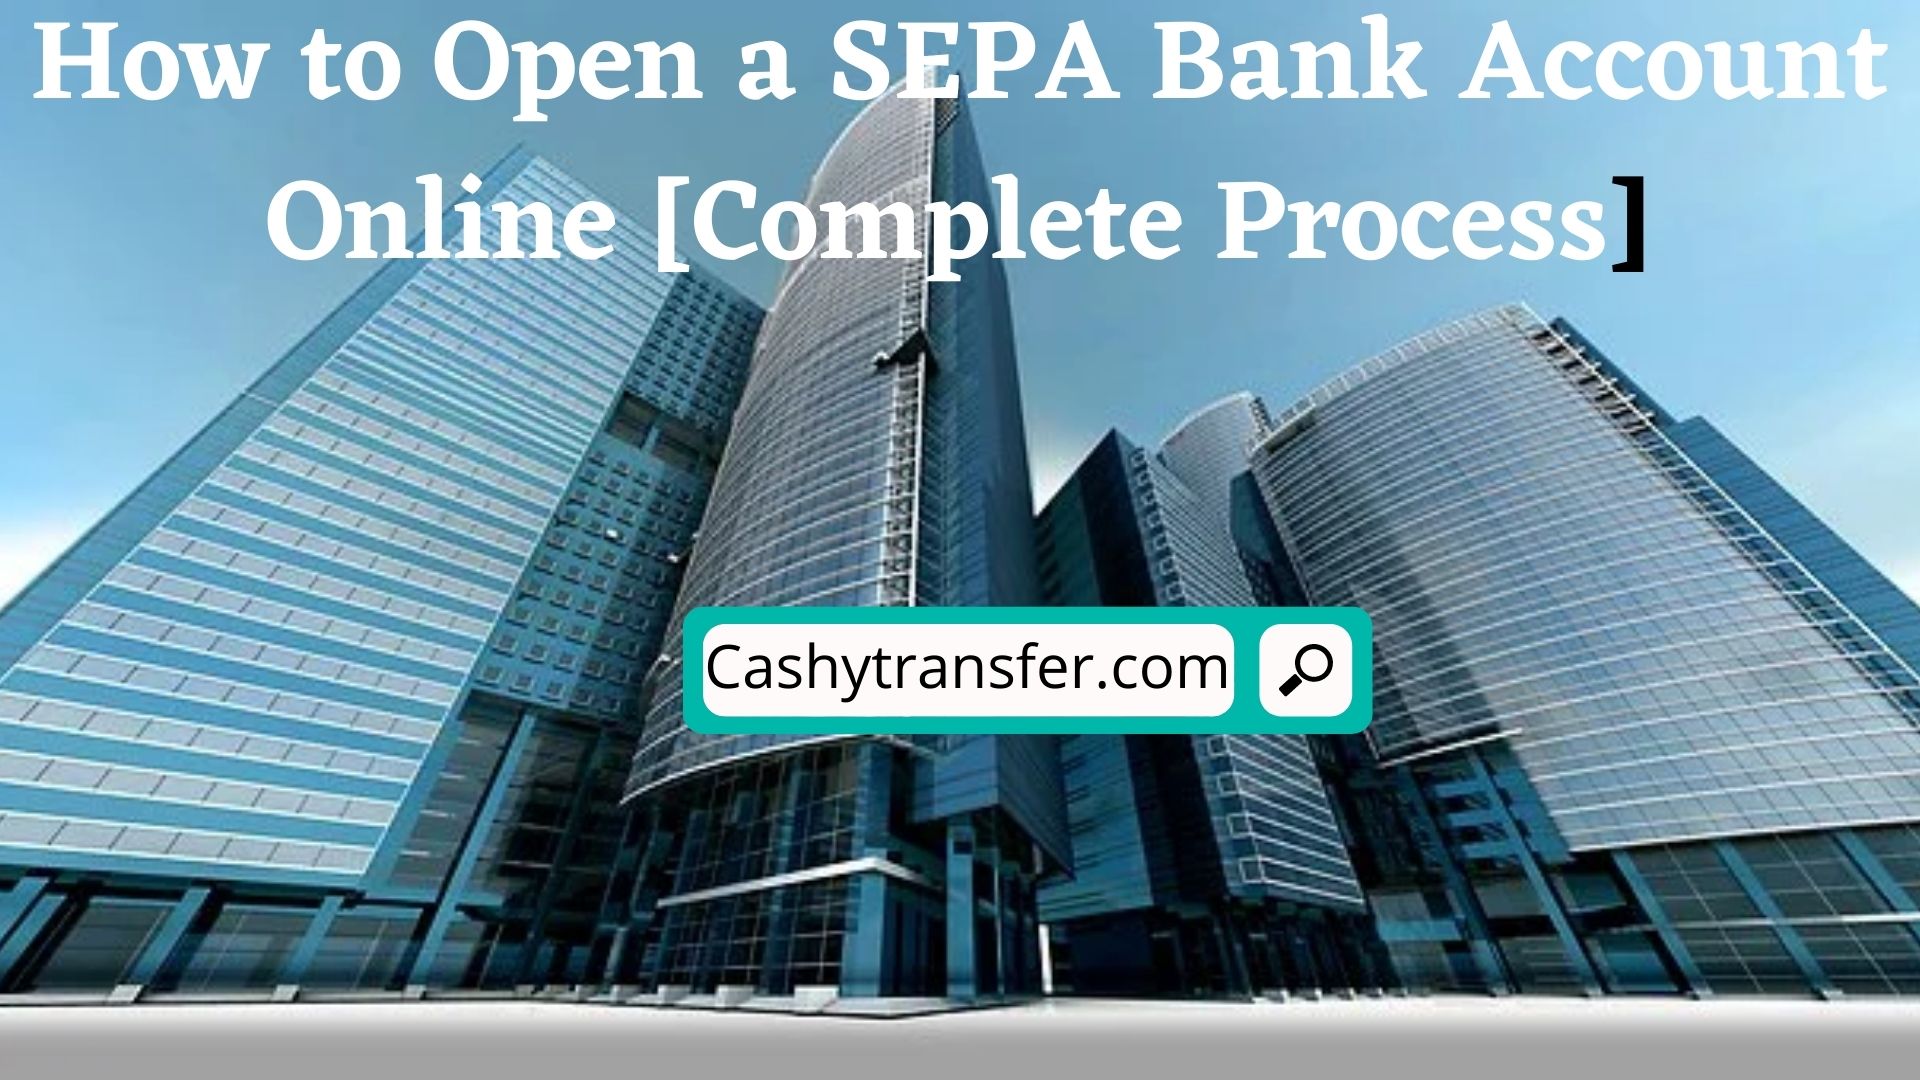 Open a SEPA Bank Account Online